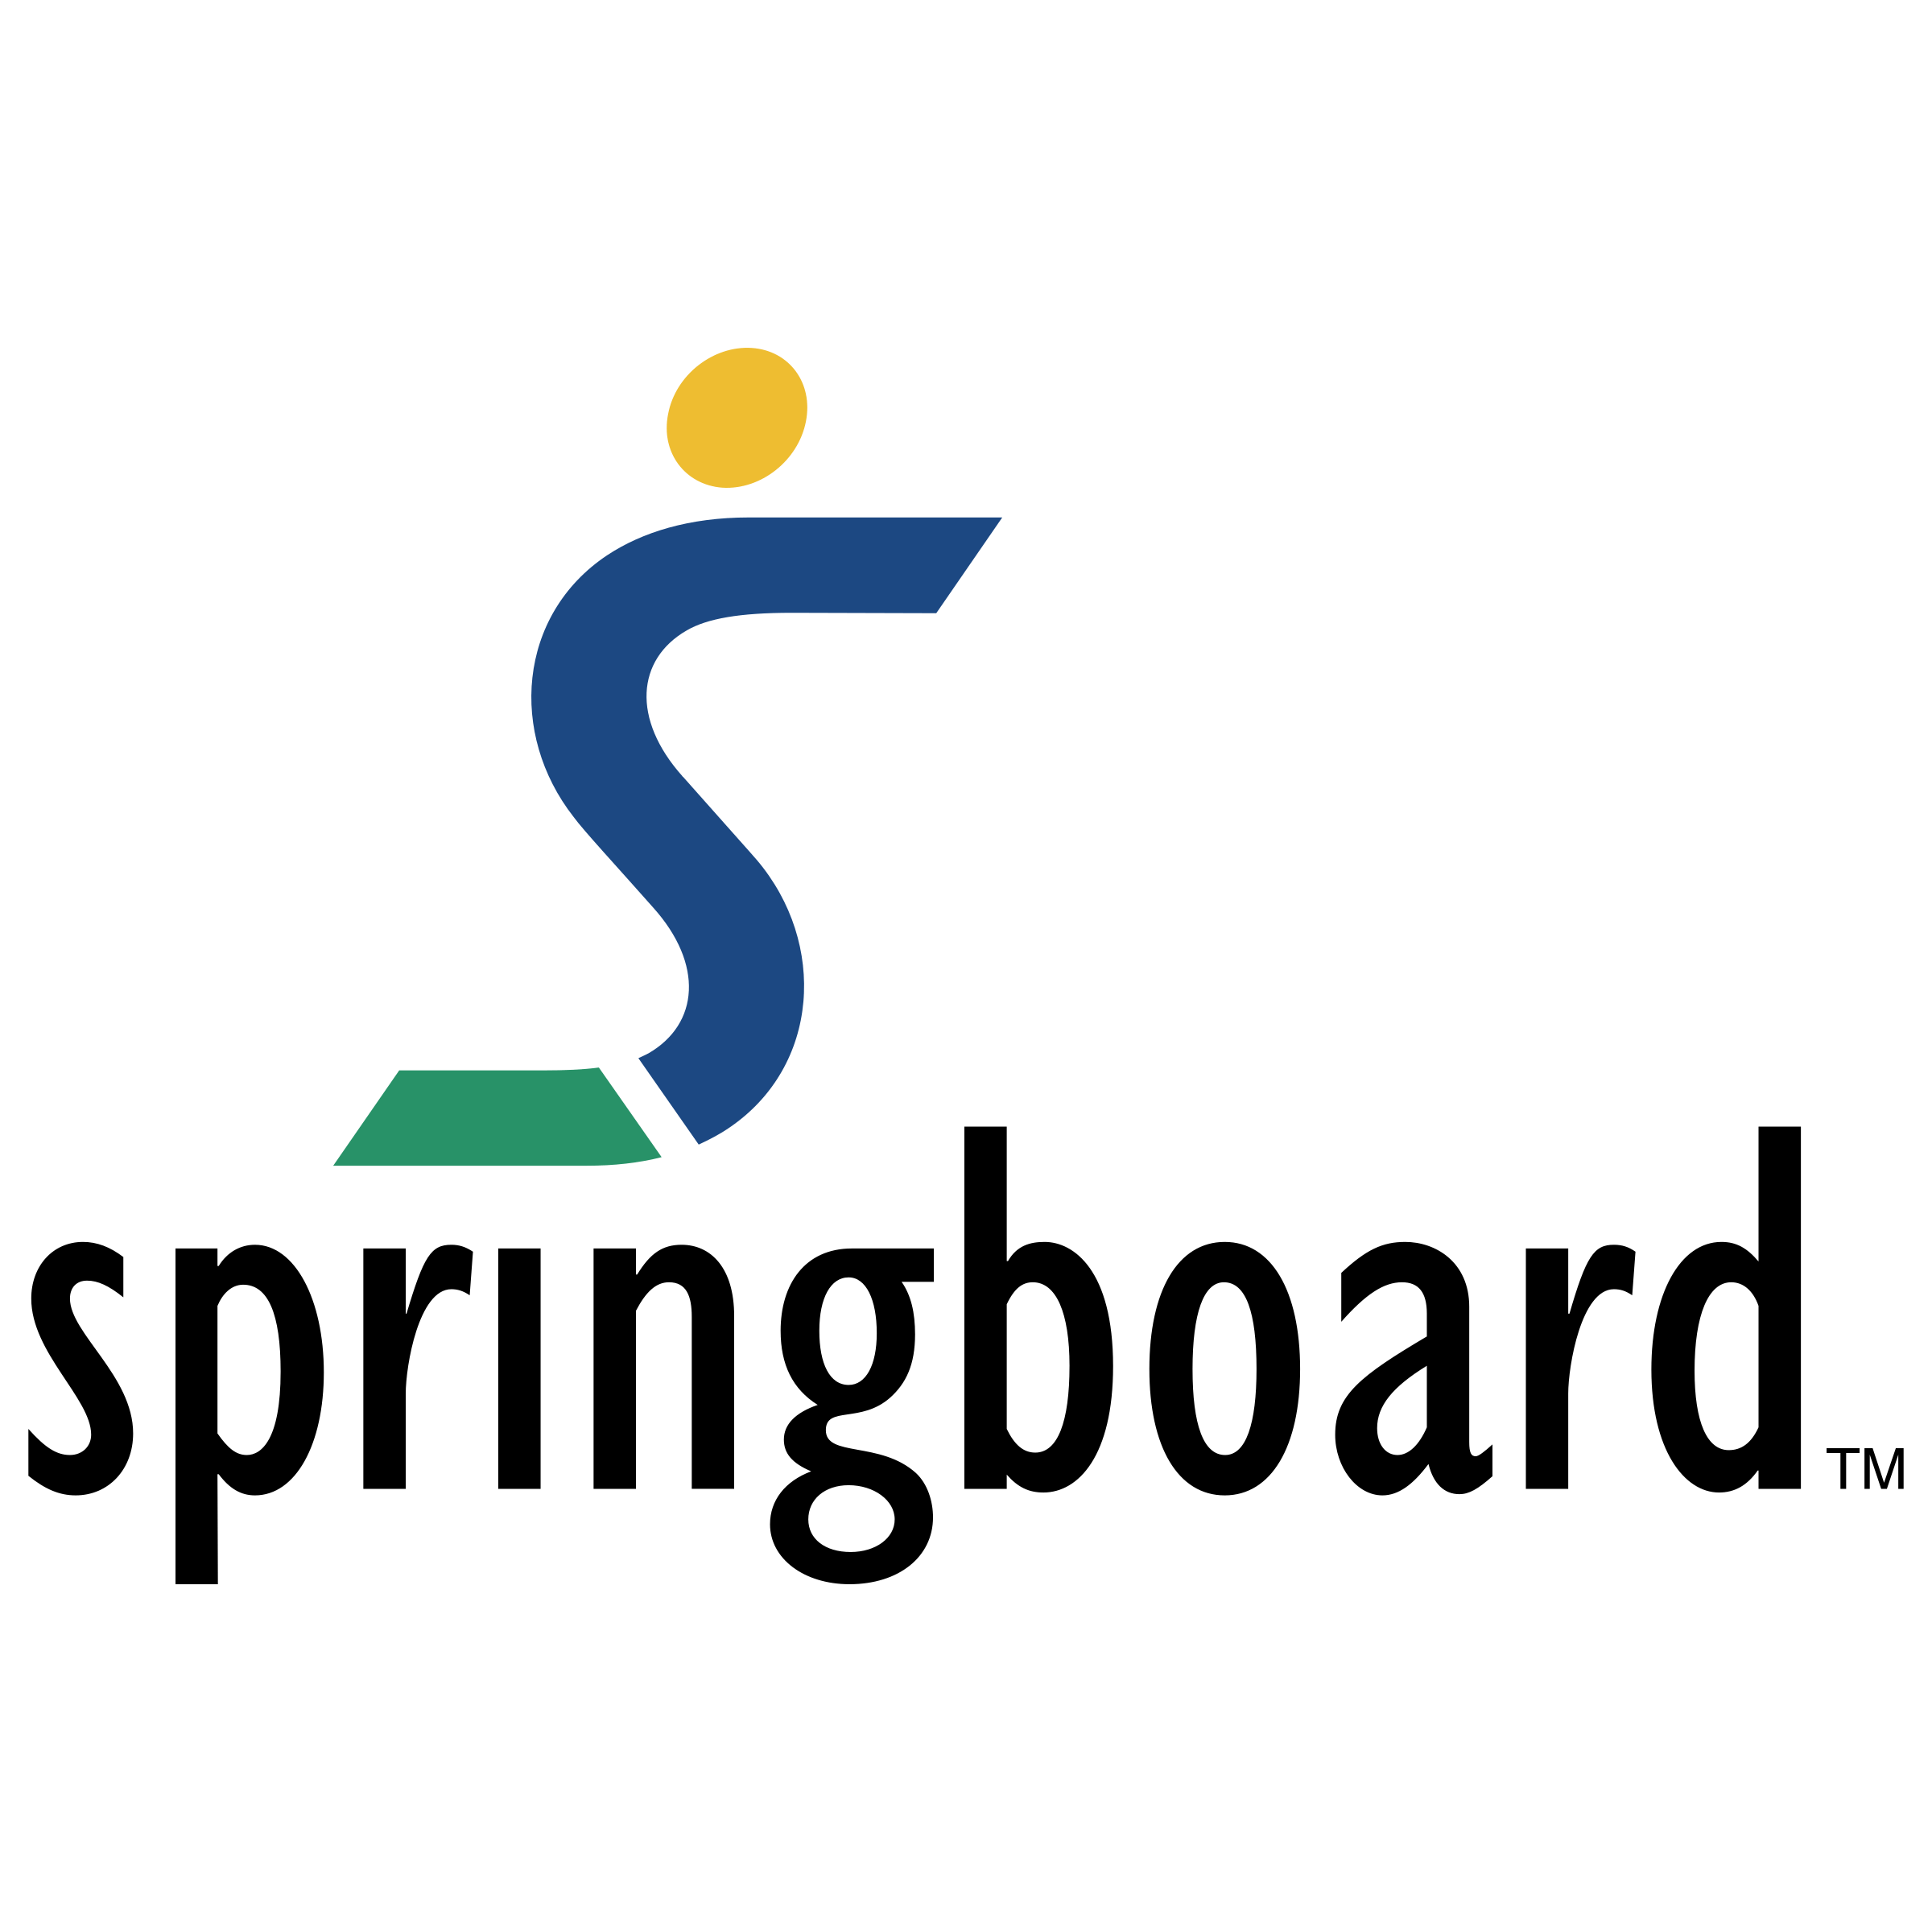 Springboard Logo - Springboard Logo PNG Transparent & SVG Vector